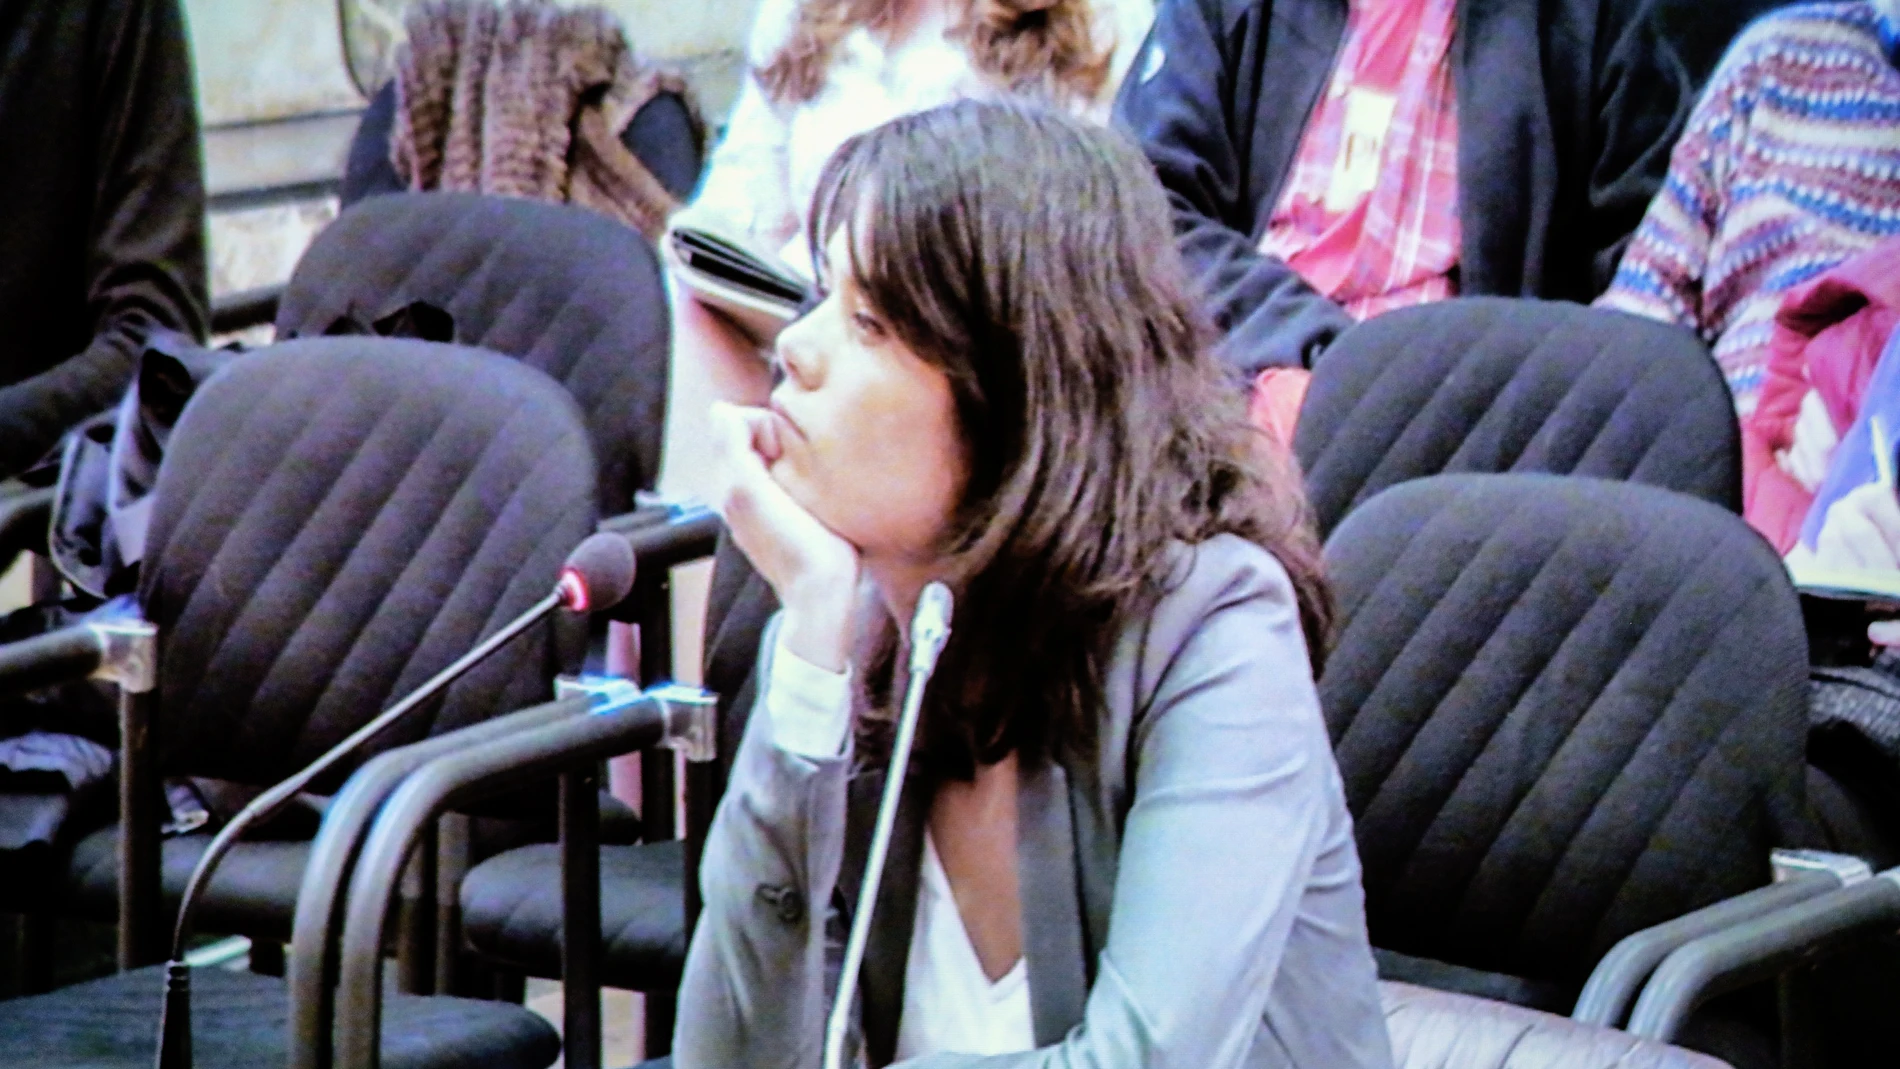 La portavoz de Unidas Podemos en la Asamblea de Madrid, Isa Serra, declara en el juicio por participar en una protesta contra un desahucio en 2014